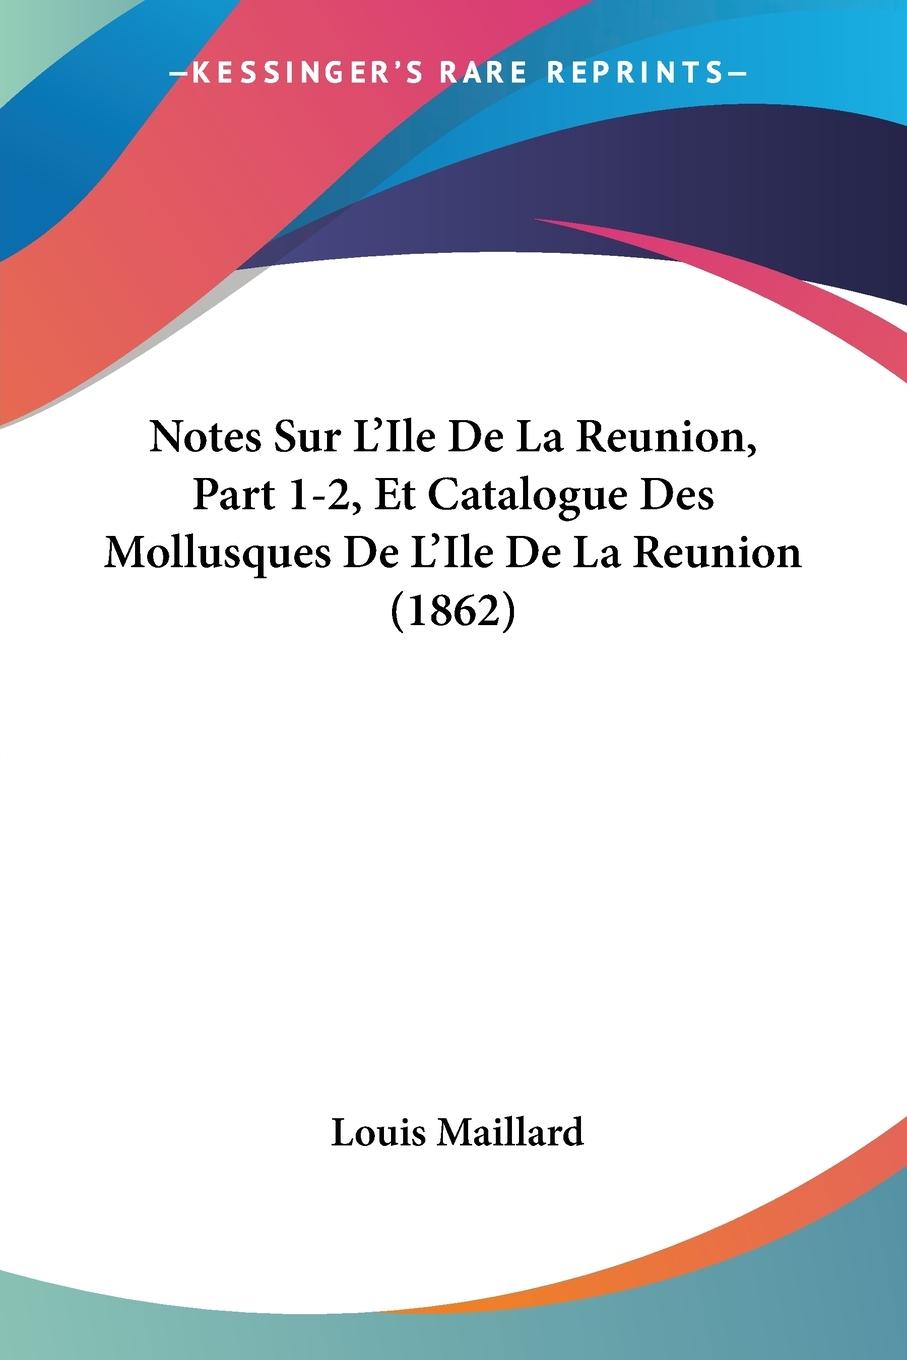 Notes Sur L Ile De La Reunion, Part 1-2, Et Catalogue Des Mollusques De L Ile De La Reunion (1862) - Maillard, Louis